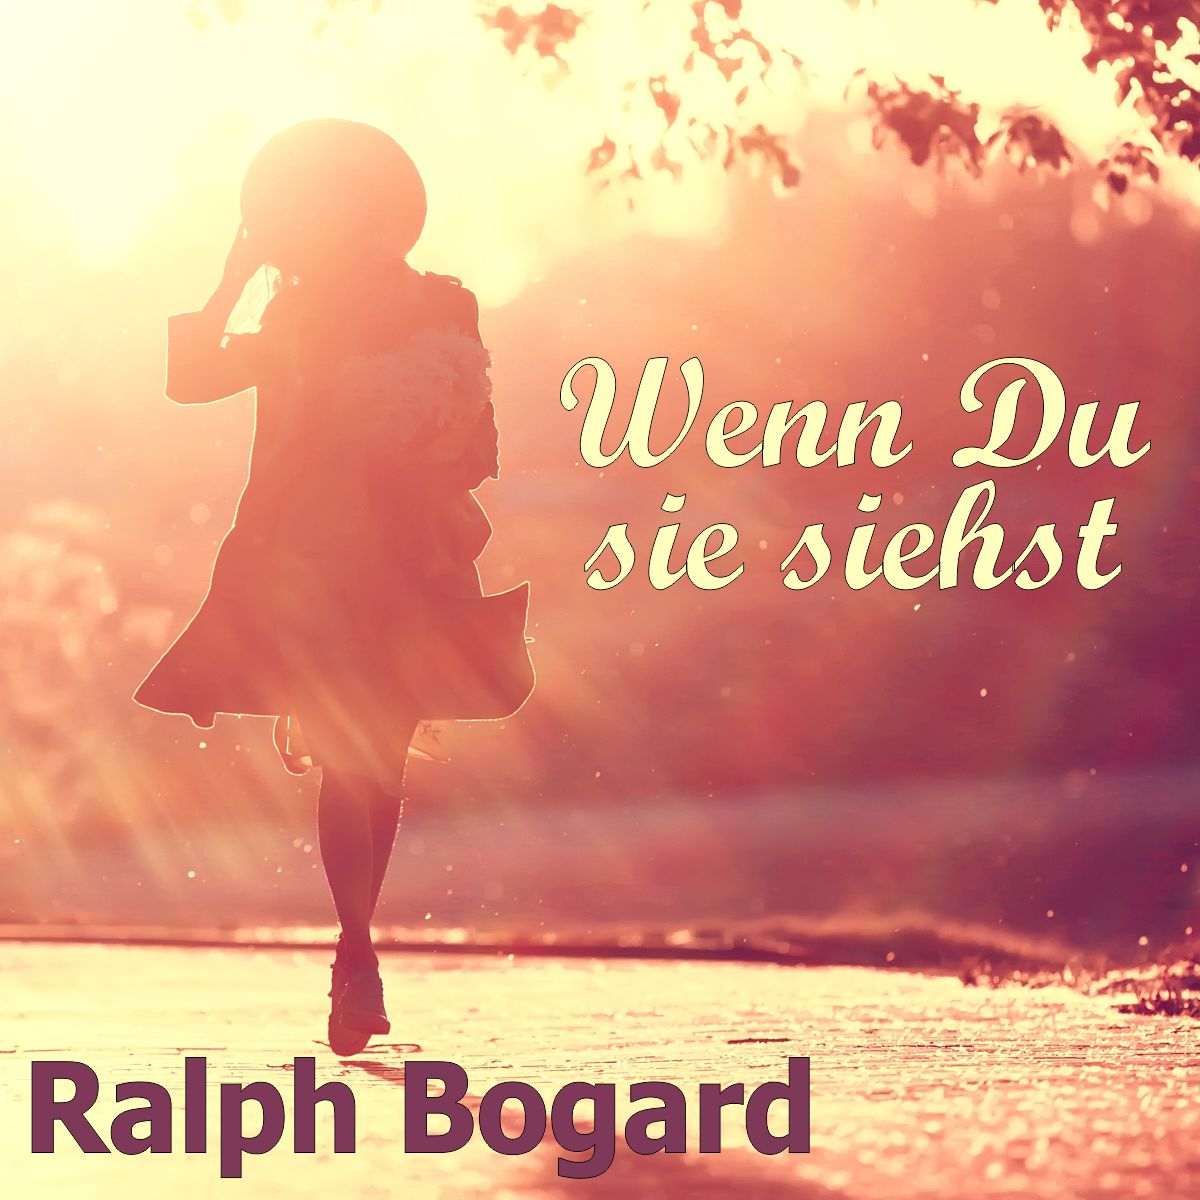 Ralph Bogard - wenn Du sie siehst - Frontcover.jpg